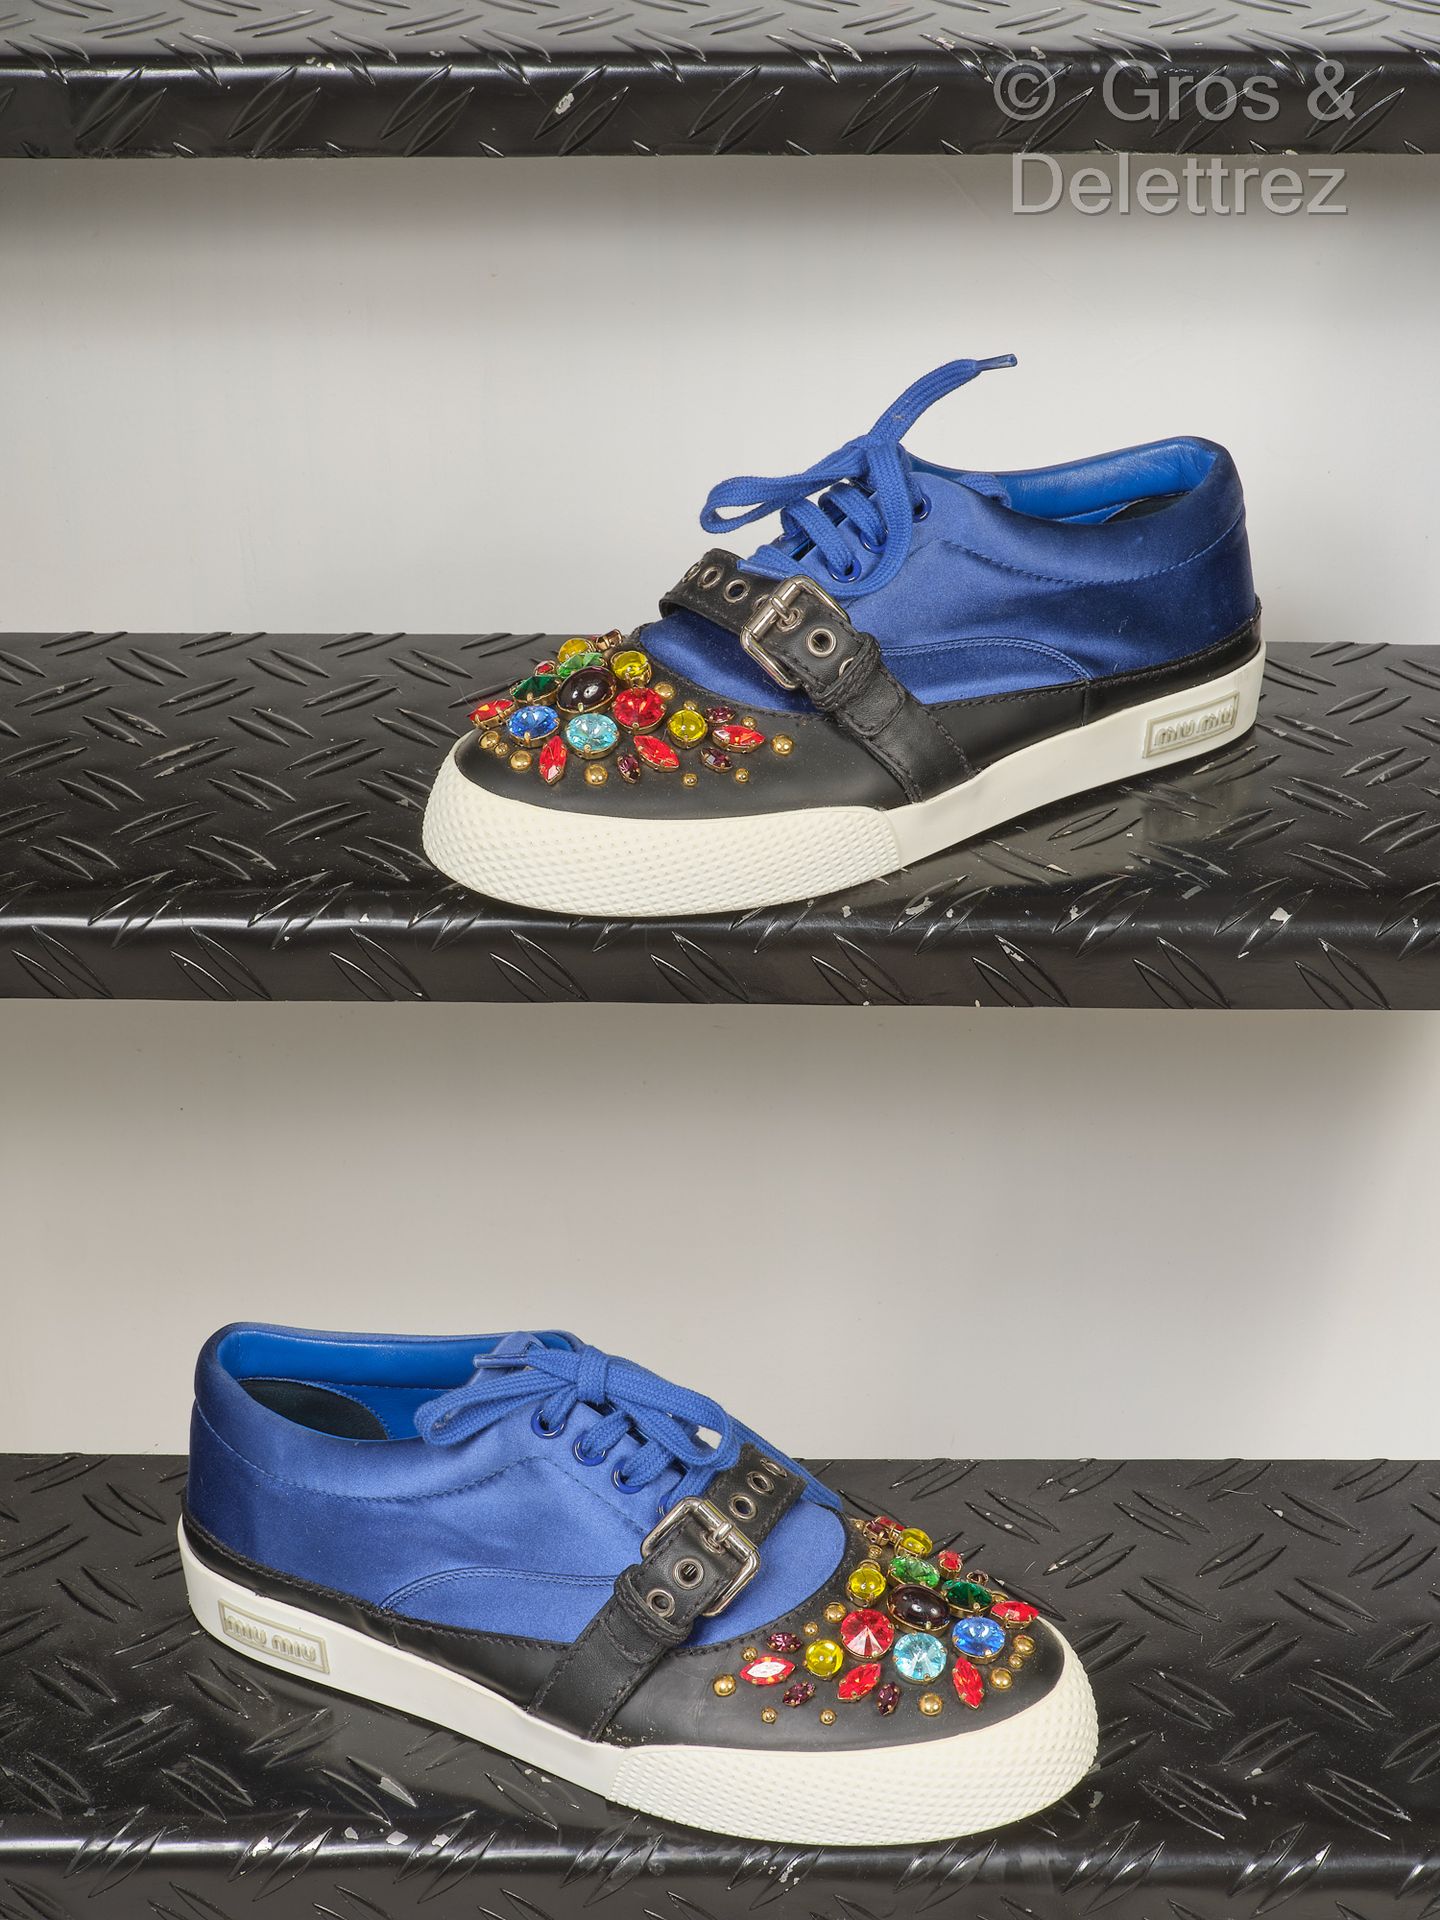 MIU MIU 系带运动鞋，皇家蓝缎面和黑色橡胶皮革，饰有多色水晶，可调节鞋带，橡胶鞋底。T. 40.状况良好（少量污垢，少量污点）。